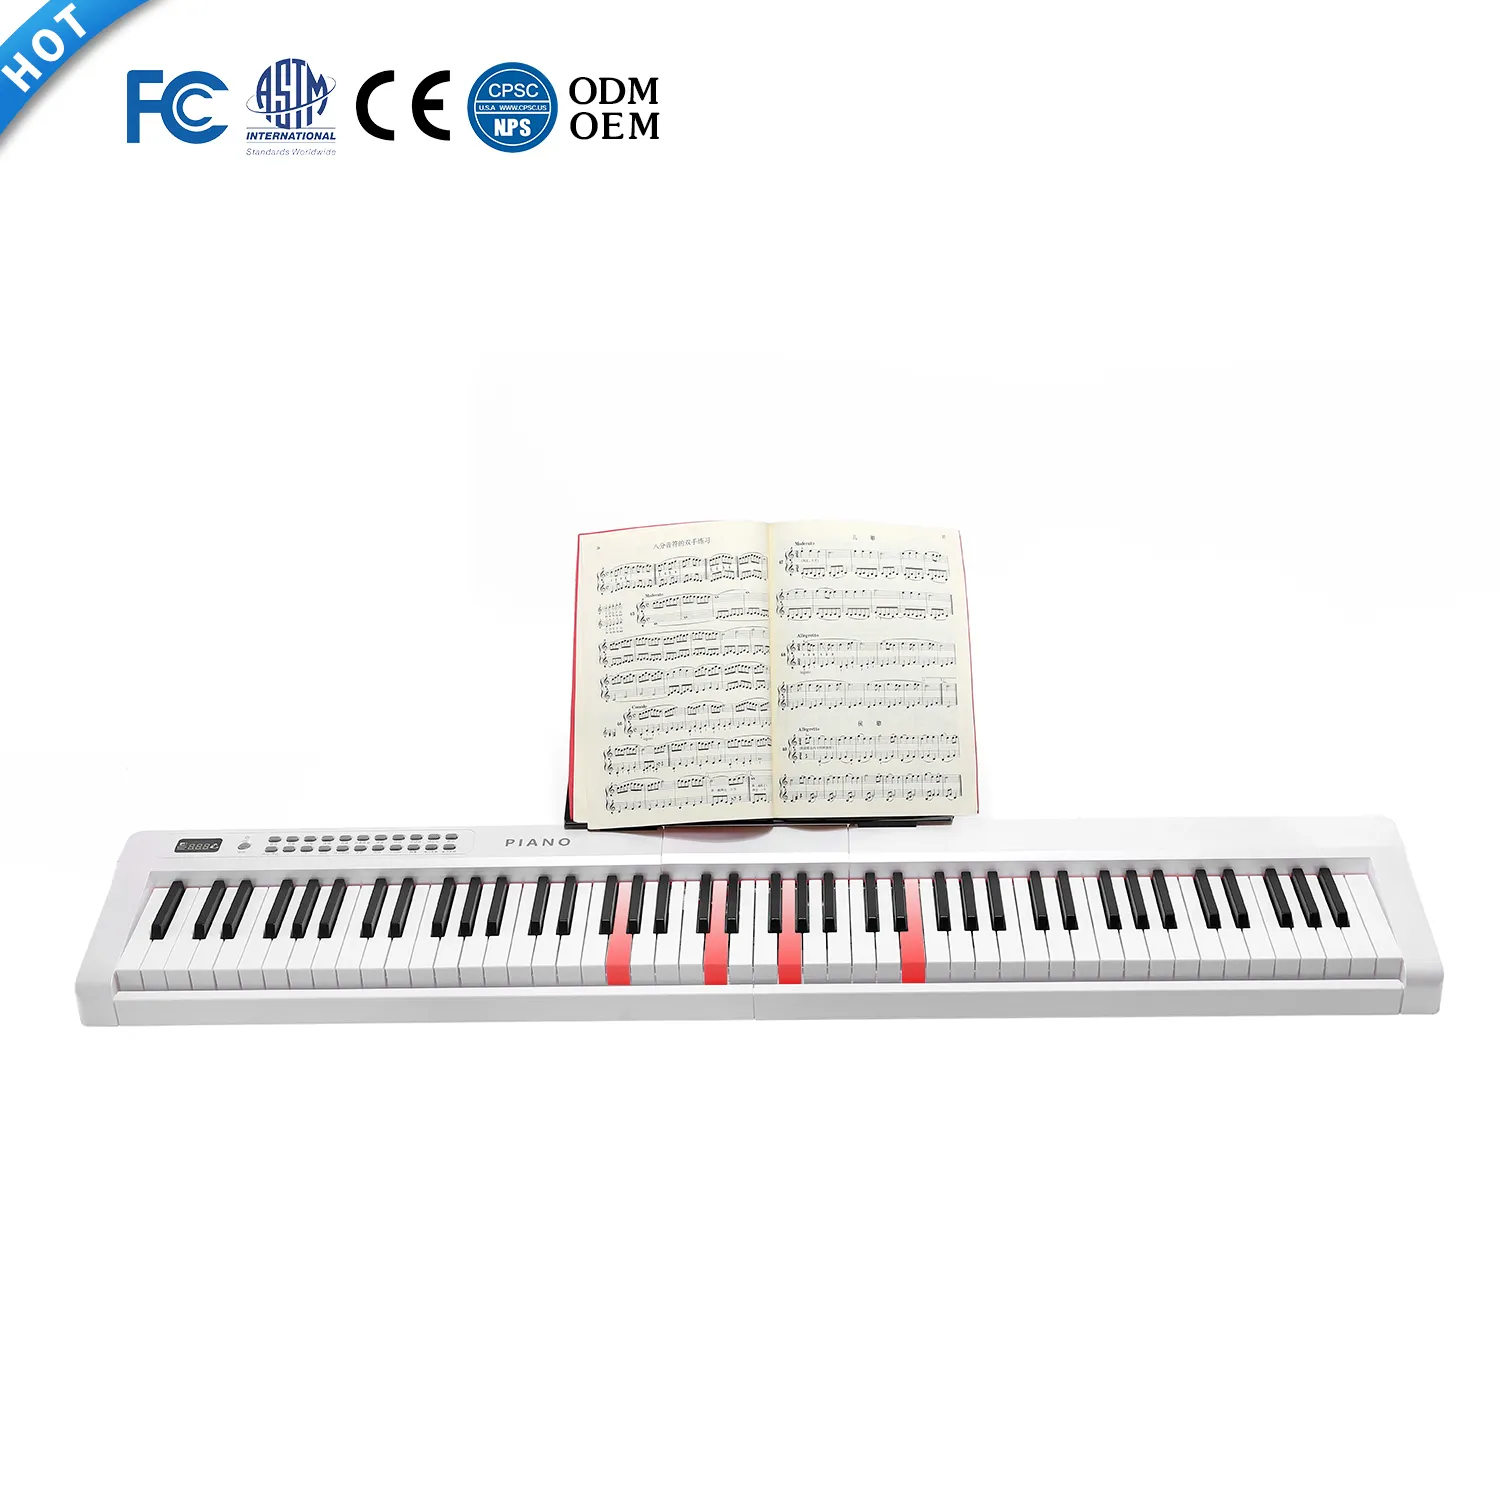 터치 민감 88 키 피아노 최고의 가격 하이 퀄리티 뮤지컬 표준 키보드 디지털 피아노 MIDI 키보드 판매